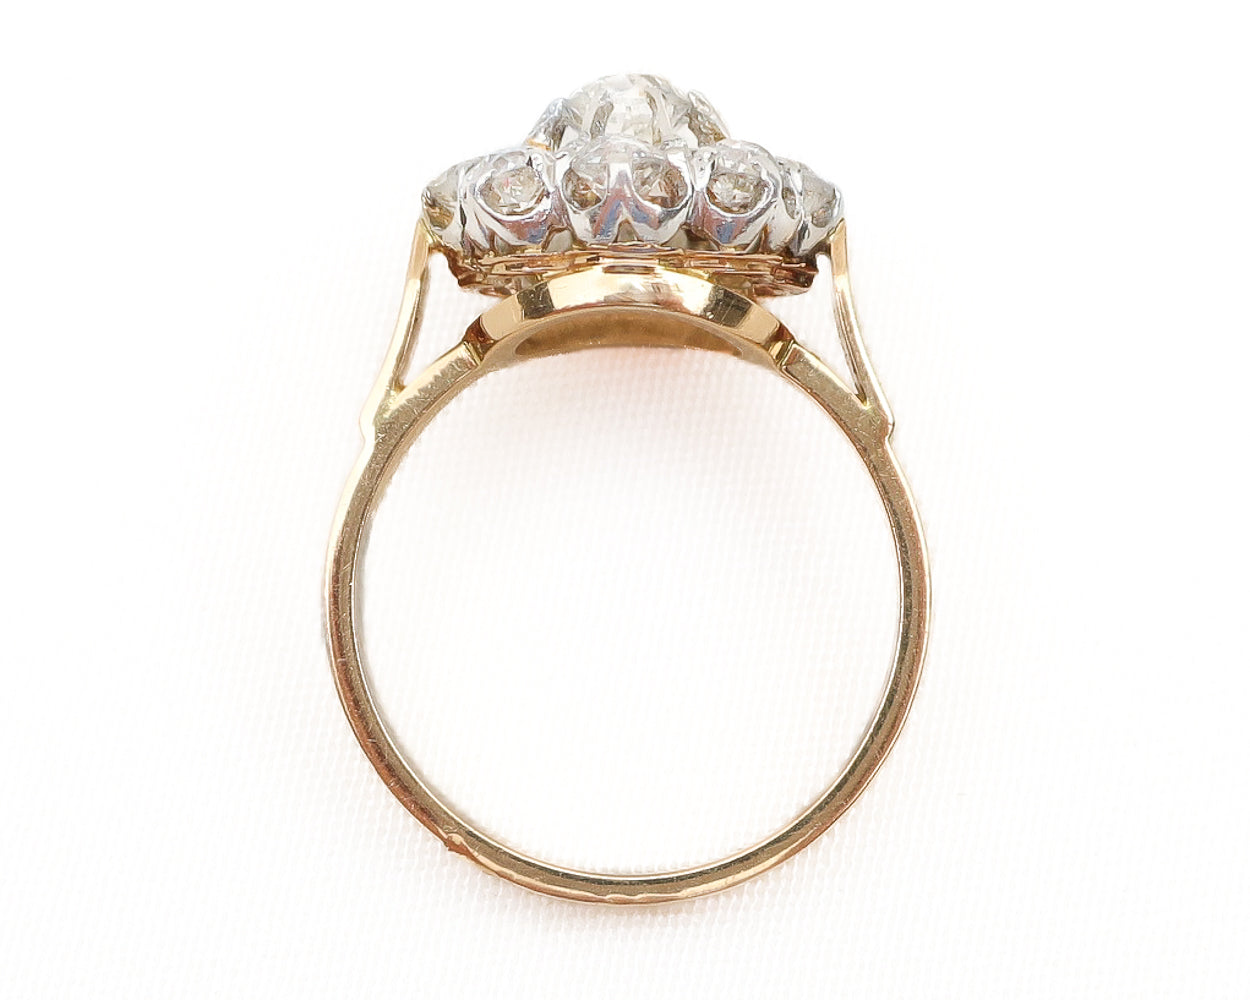 French Edwardian Diamond Halo Ring